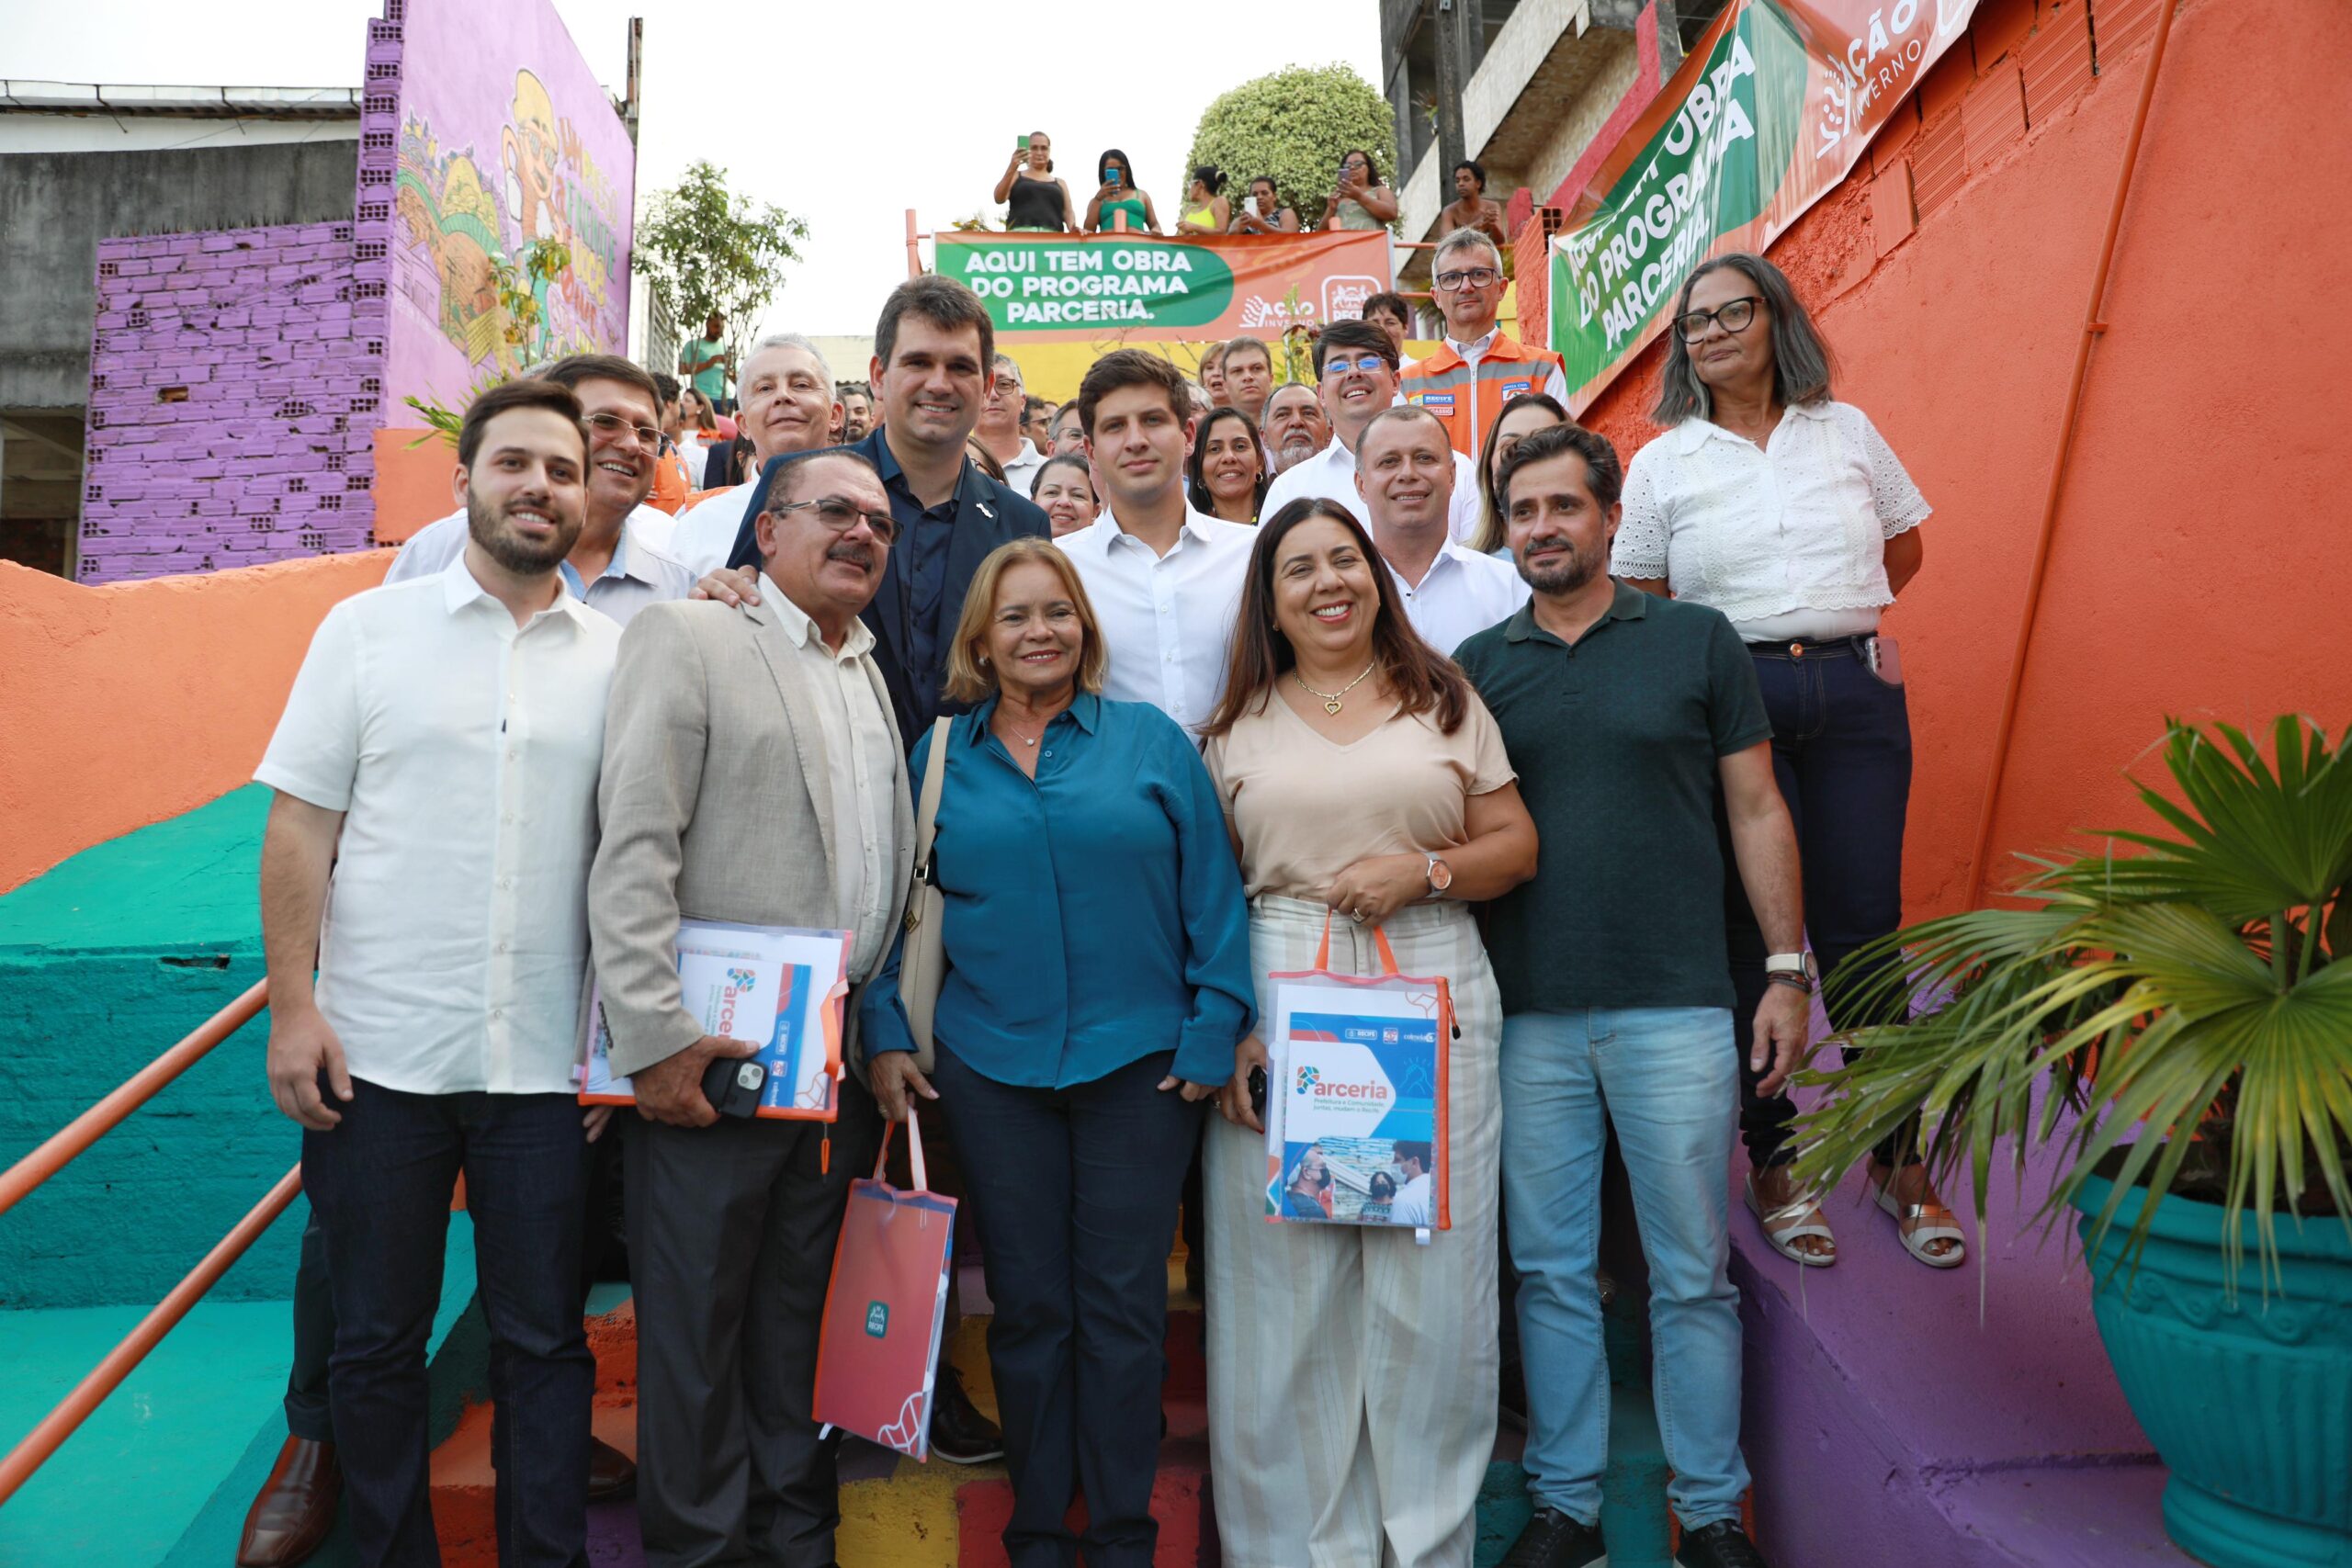 João Campos apresenta Programa Parceria do Recife a prefeitos pernambucanos.